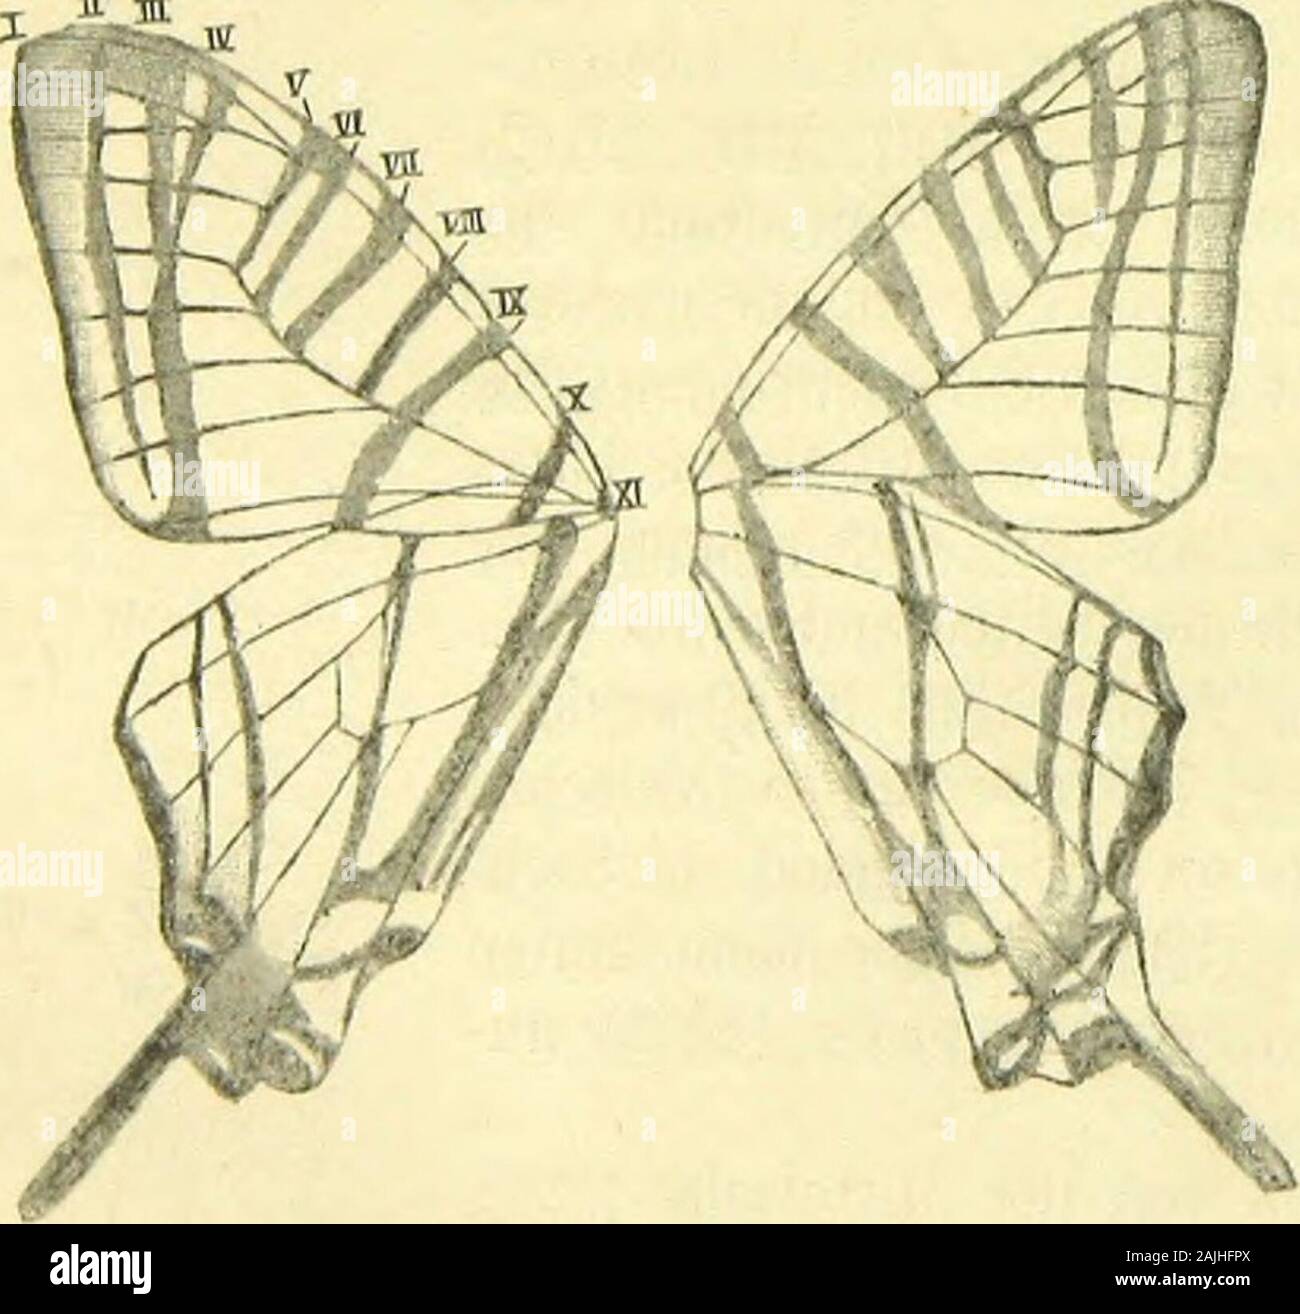 Die artbildung und Verwandtschaft bei den Schmetterlingen eine systematische Darstellung der Abänderungen, Arten und Abarten der segelfalter-ähnlichen Formen der Gattung Papilio. Auf sie folgt, dieMittelzelle (MZ) / vorn begrenzend und mit der Costalader nachinnen zu durch einen kleinen Ast verbunden, sterben Ou ungegabelte Sub-costalader (SC), hierauf, den Seitenrand der Mittelzelle bildend, dieobere, mittlere und untere Discocellularader (ODC, MDC, UDC), bei denen wiederum die obere und untere Radial-Ader (UR) entspringen. Sterben Medianader (M) hat wie in denVorderflügeln drei Aes Stockfoto